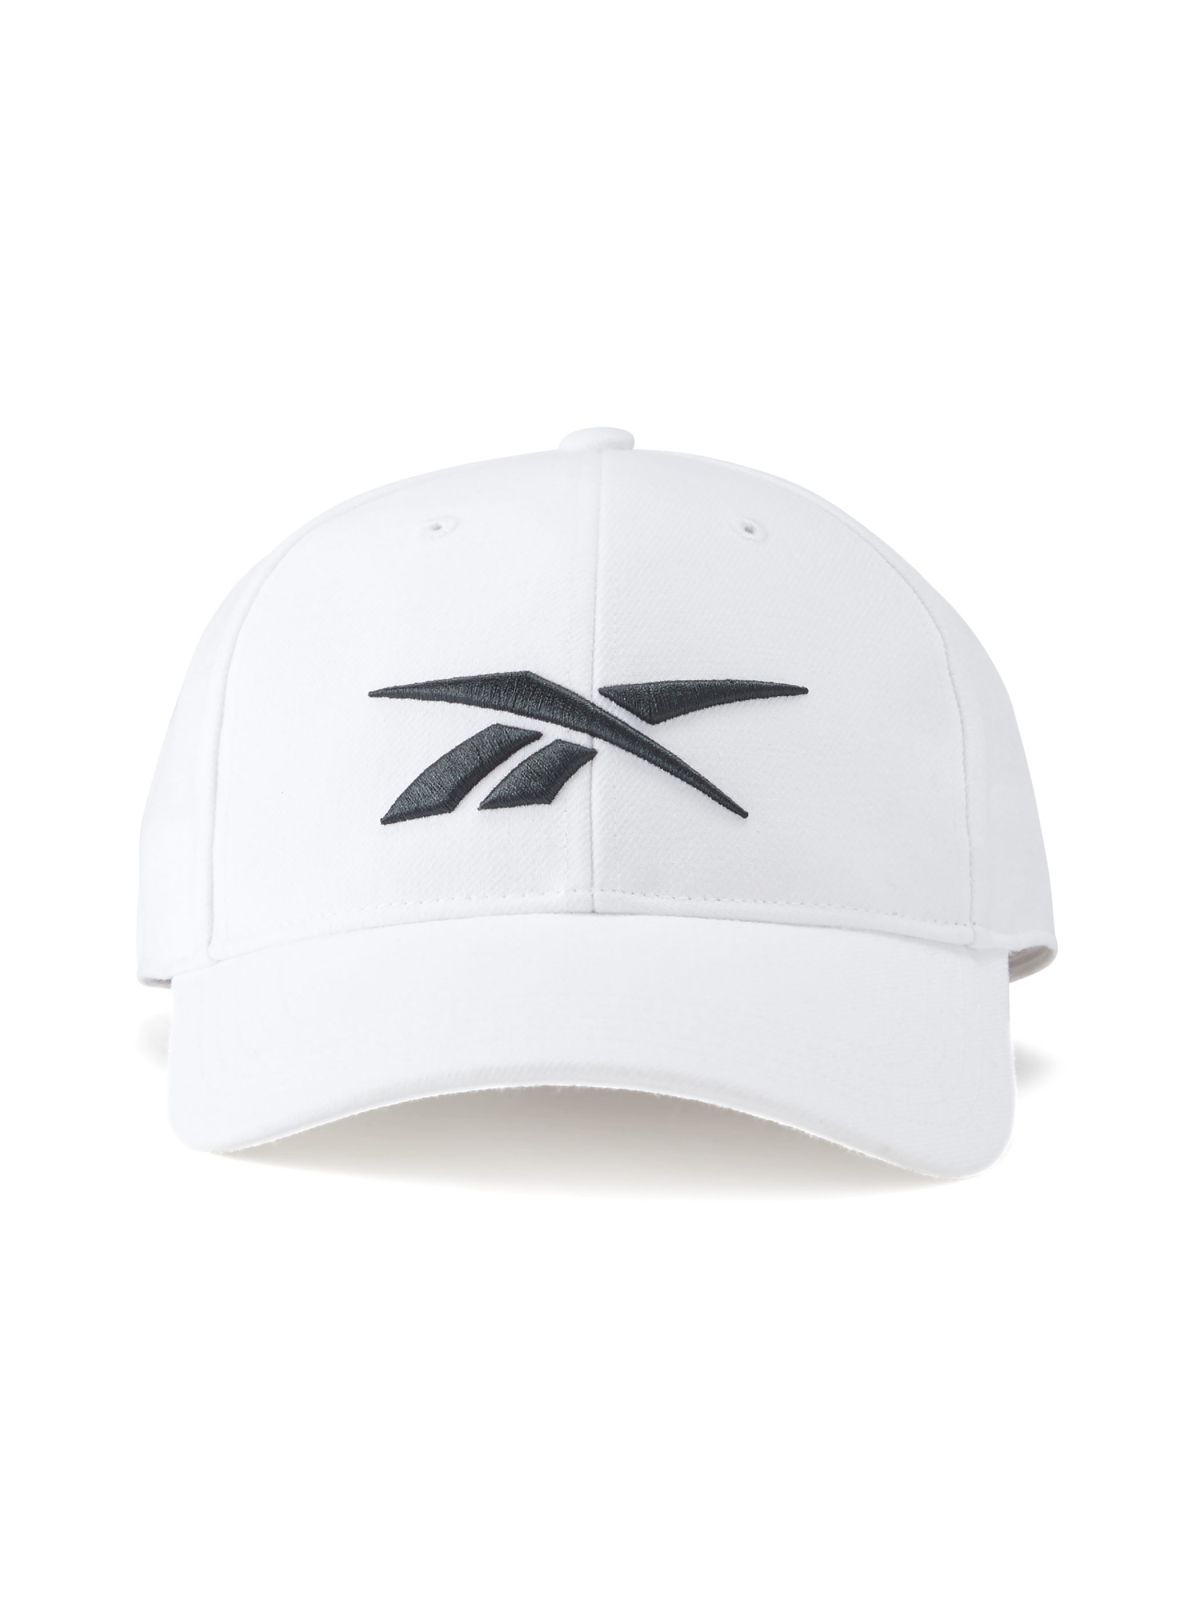  כובע מצחייה עם לוגו / נשים של REEBOK